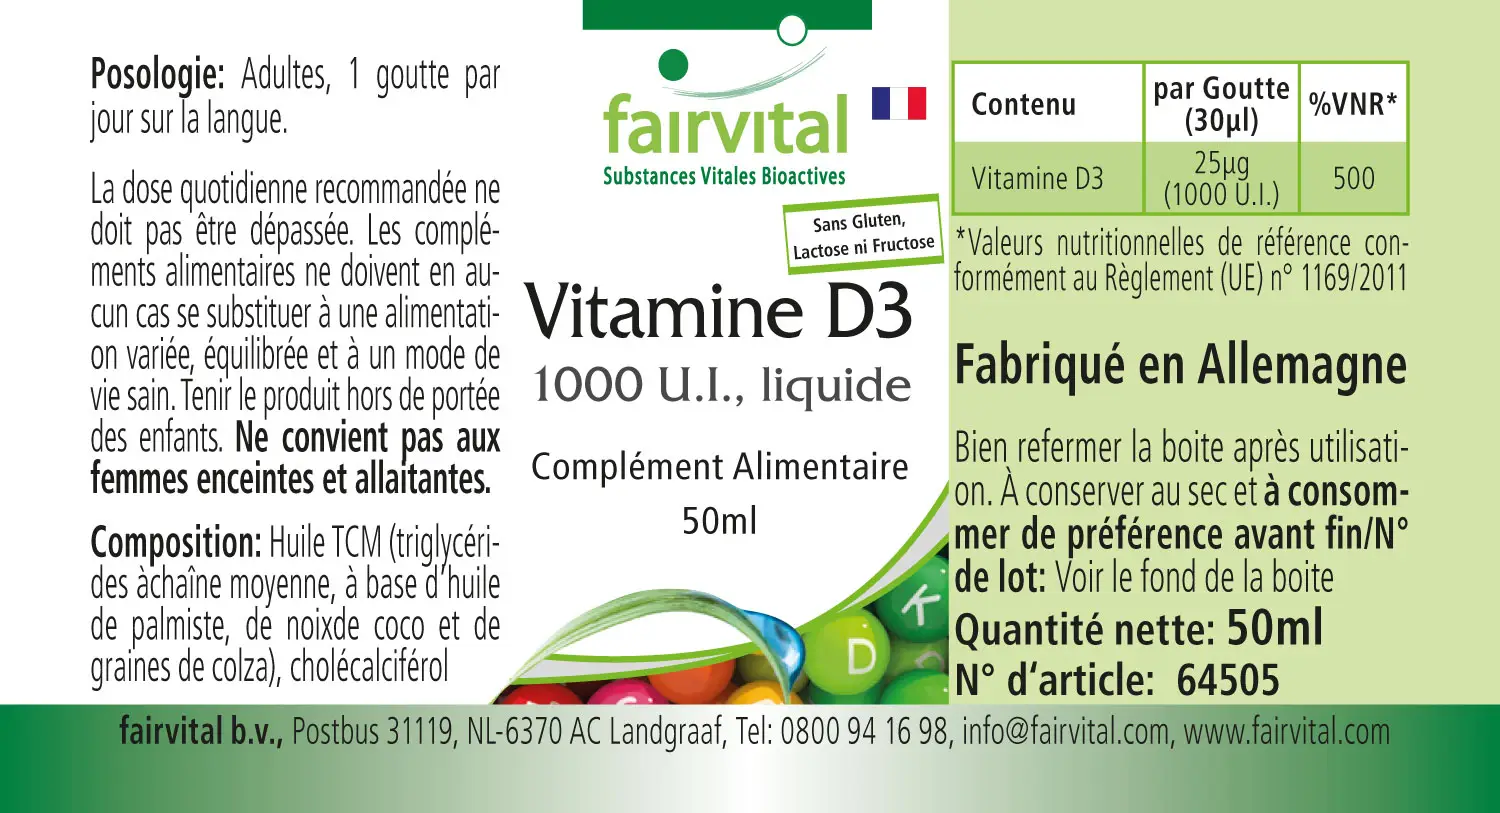 Vitamina D3 líquida - 1000 UI por gota - 50ml